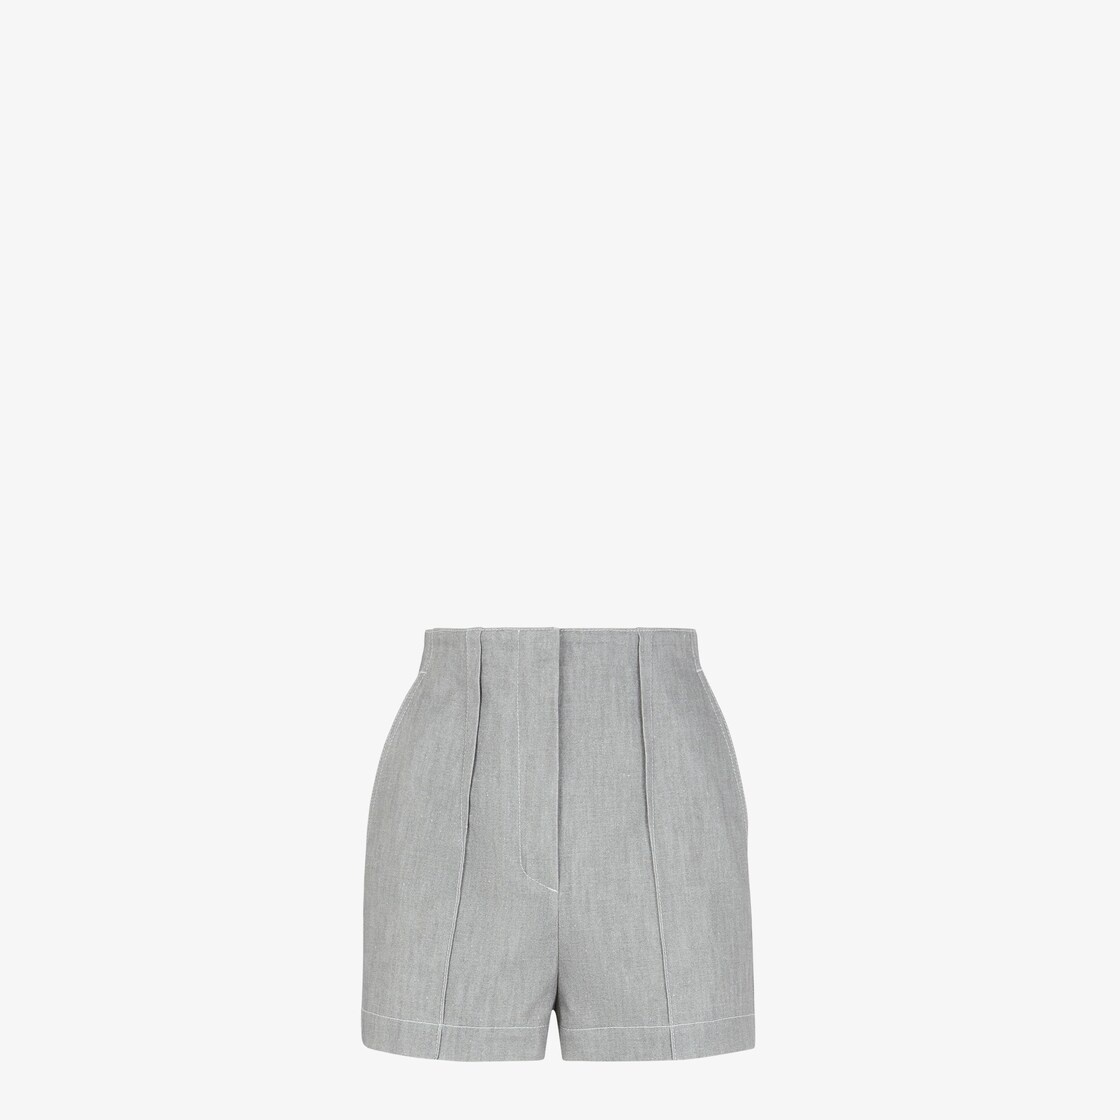 Gray chambray shorts - 1